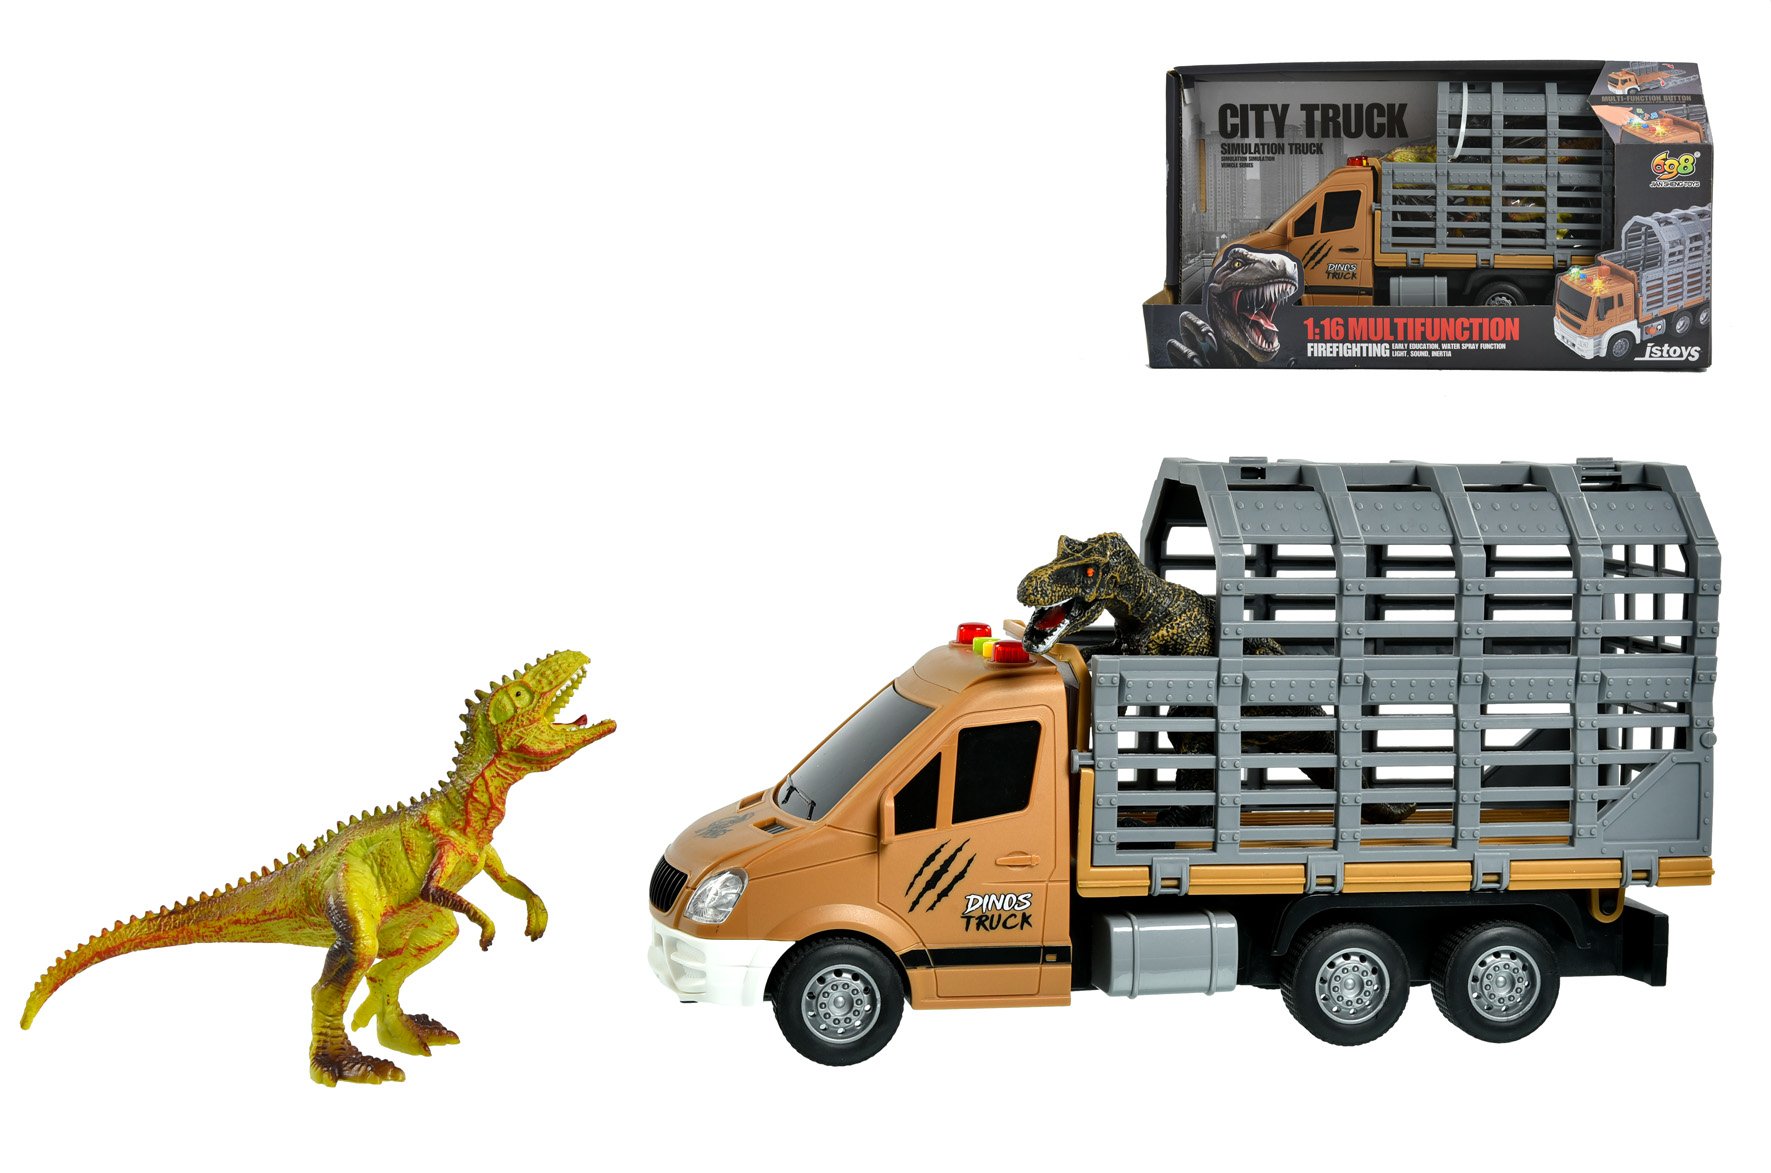 Dinosaures Jouets Camion Transport Transport Camion Jouets Avec